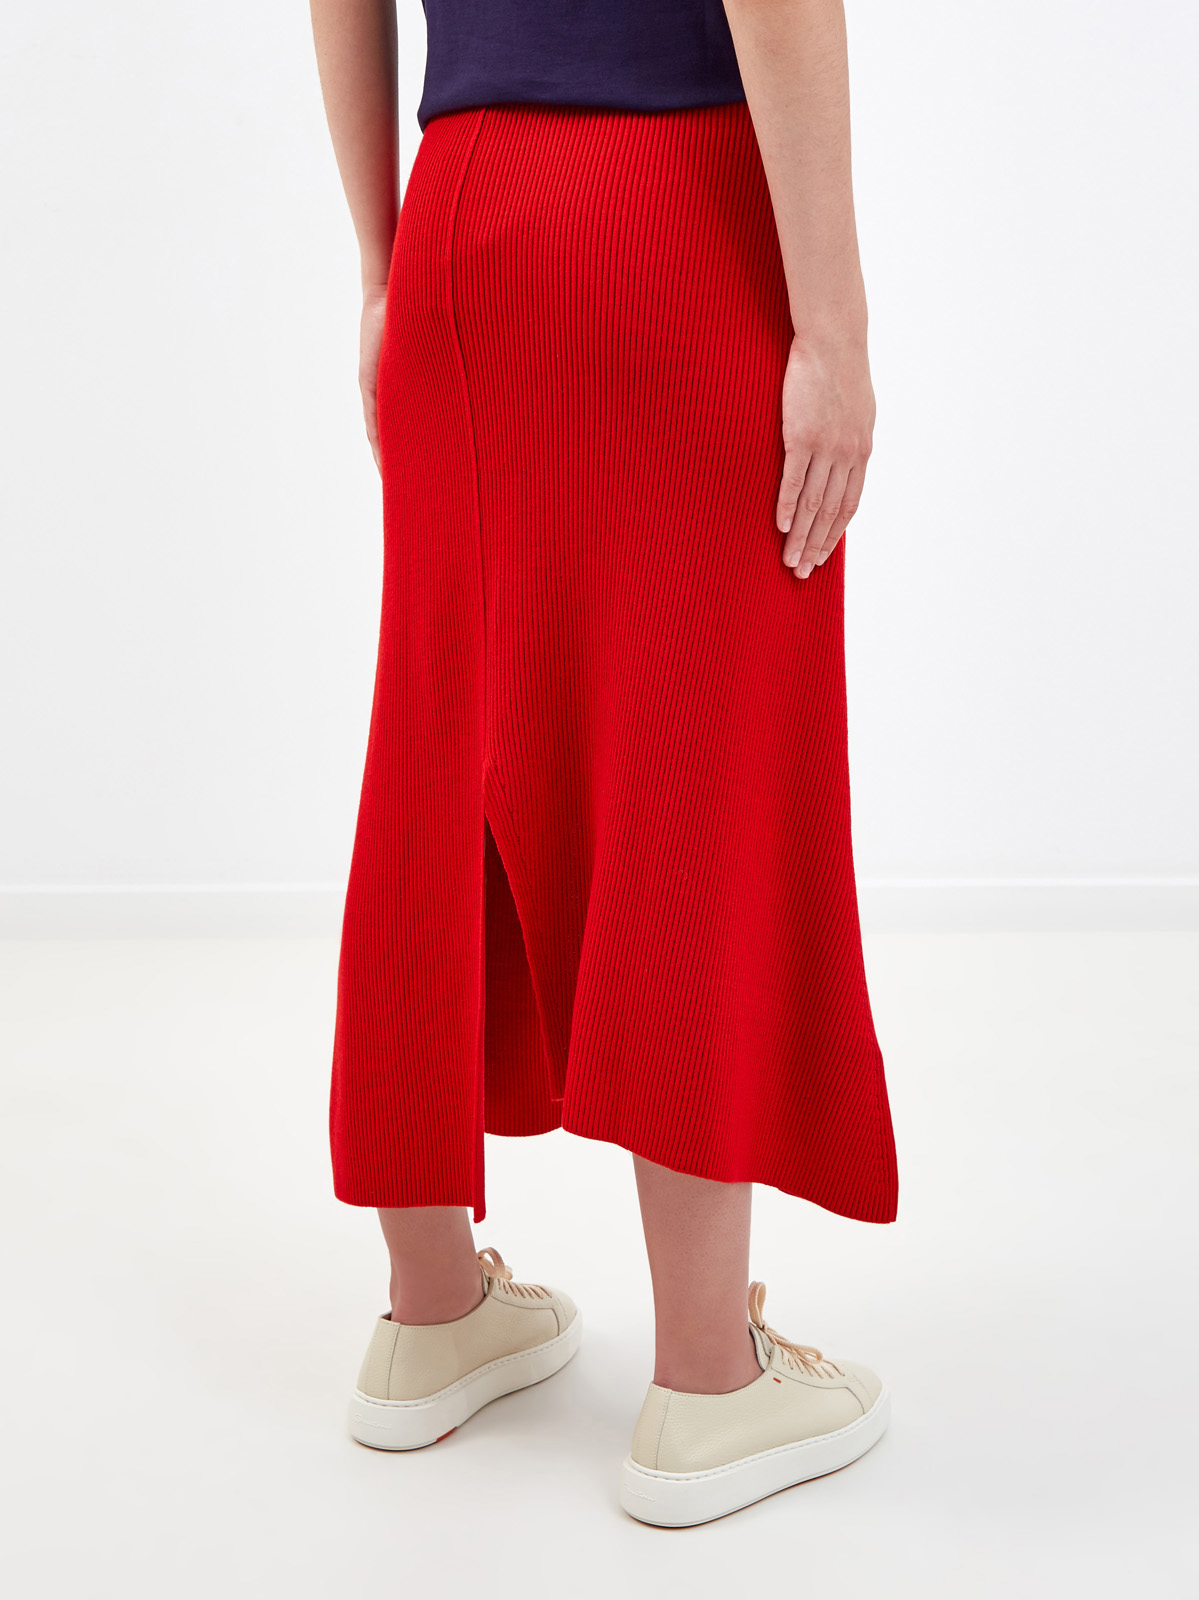 Яркая юбка-миди из пряжи в тонкий рубчик KENZO, цвет красный, размер S;M - фото 4